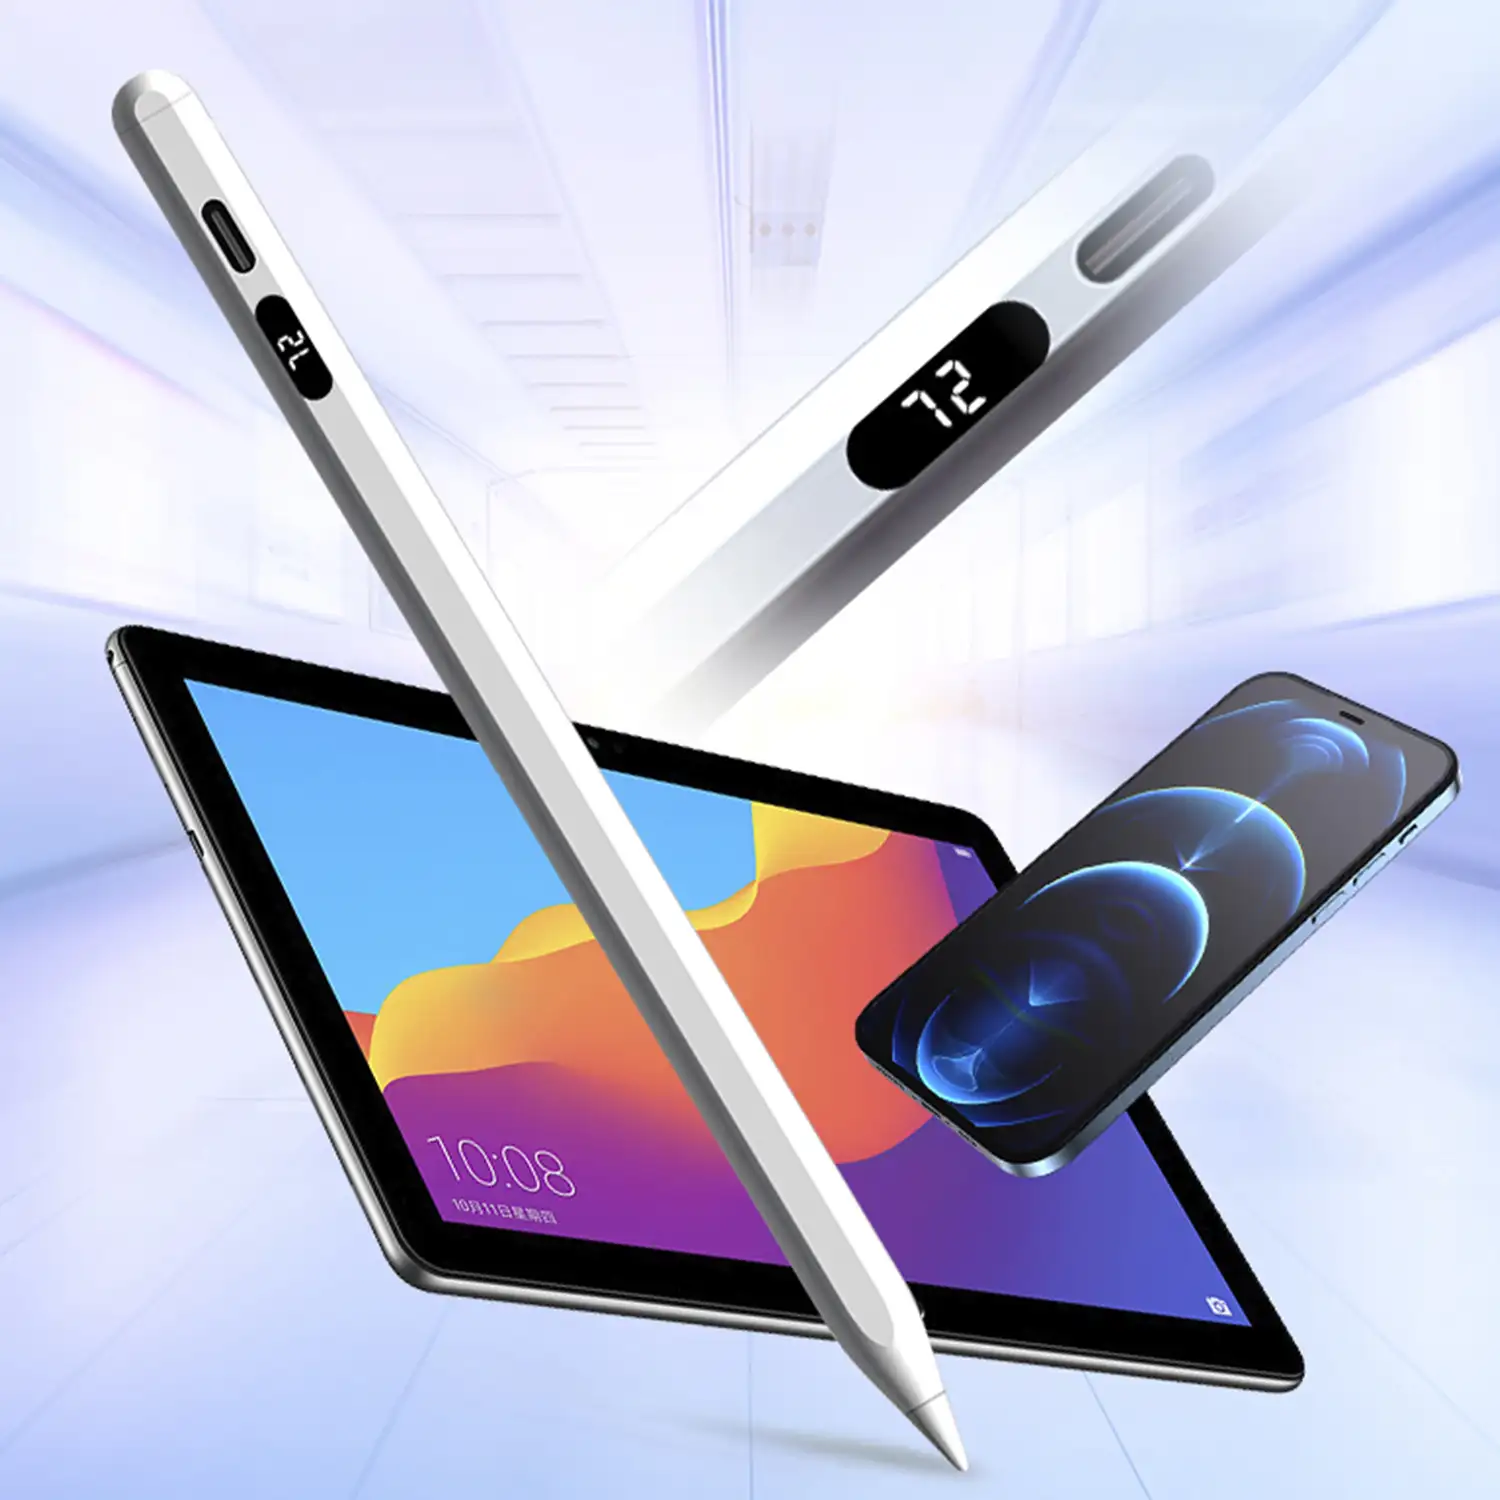 Pencil Pen C11 universal, para smartphones y tablets. Con display.